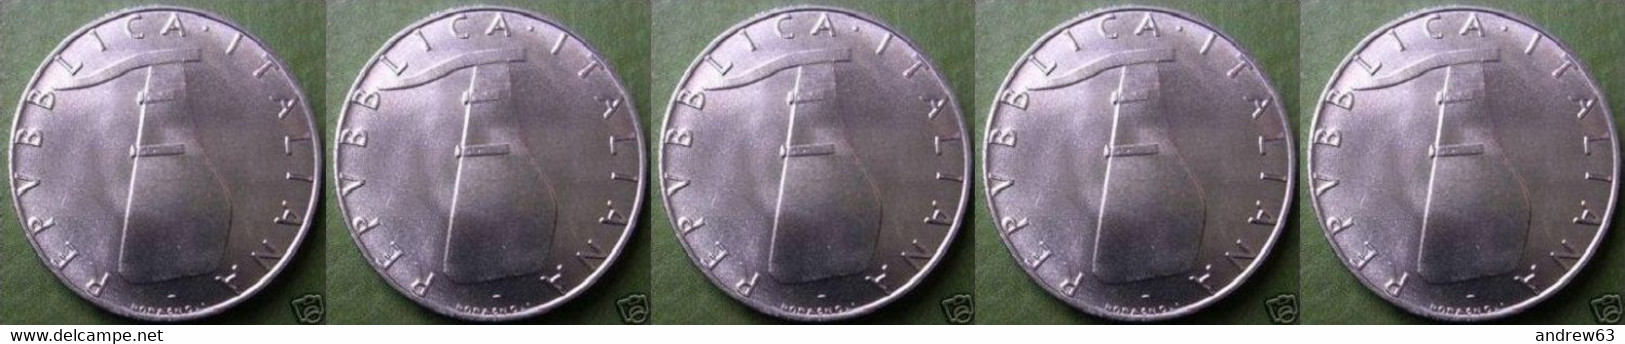 ITALIA - Lire 5 1979 - FDC/Unc Da Rotolino/from Roll 5 Monete/5 Coins - 5 Lire